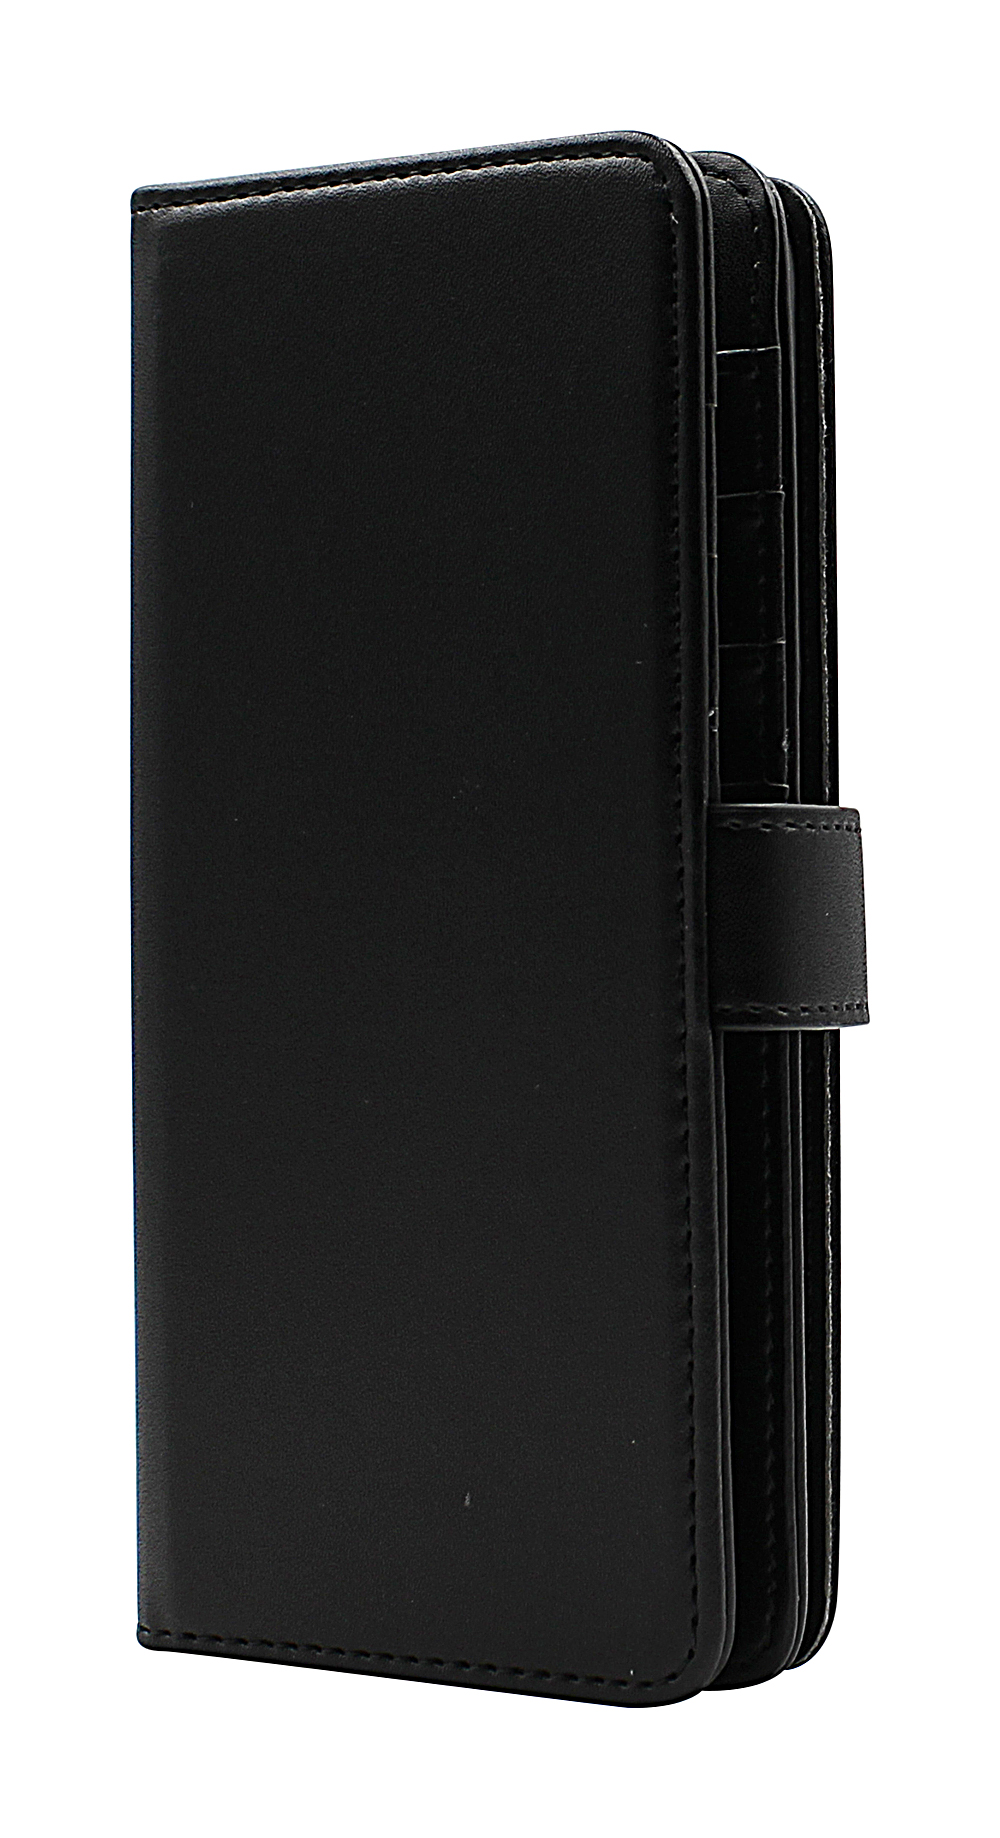 CoverInSkimblocker XL Wallet OnePlus Nord CE 5G